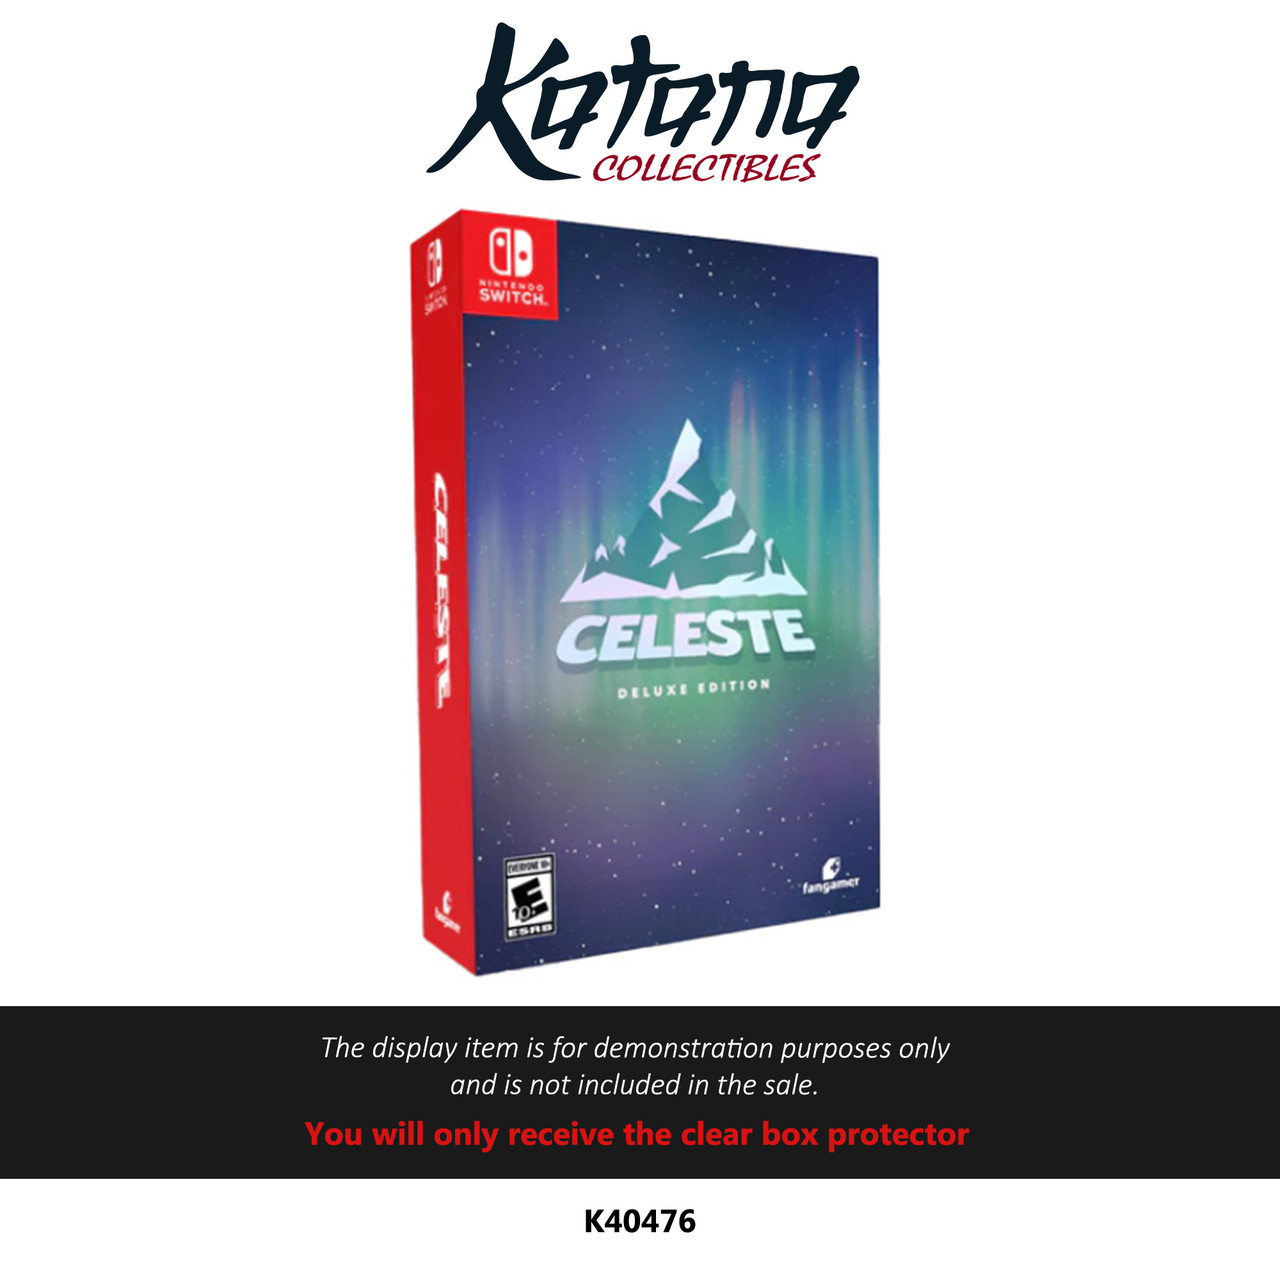 Katana Collectibles Protector For Celeste Fangamer Deluxe Edition